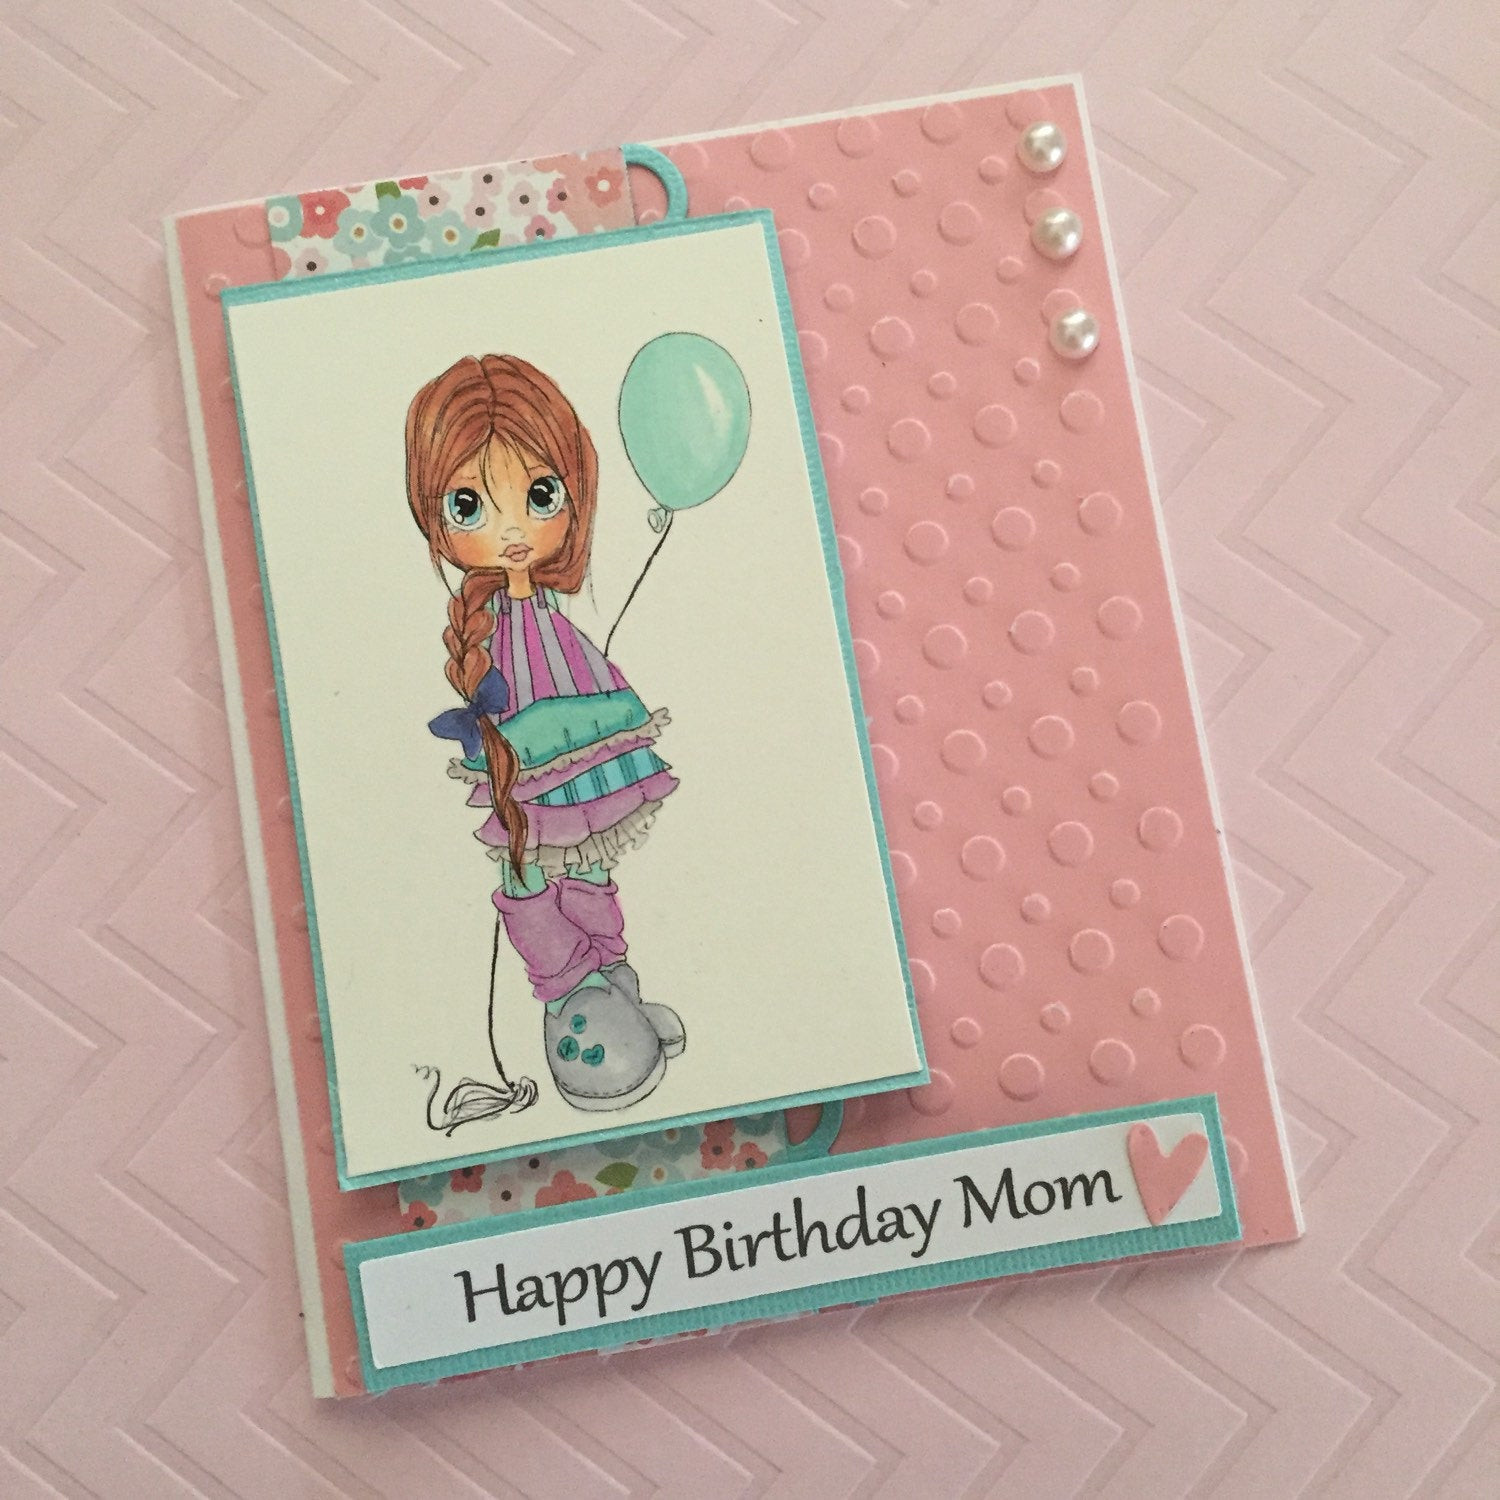 Happy Birthday Mom Cards
 Happy Birthday Mom Handmade CArd Birthday by KipseysCardShop